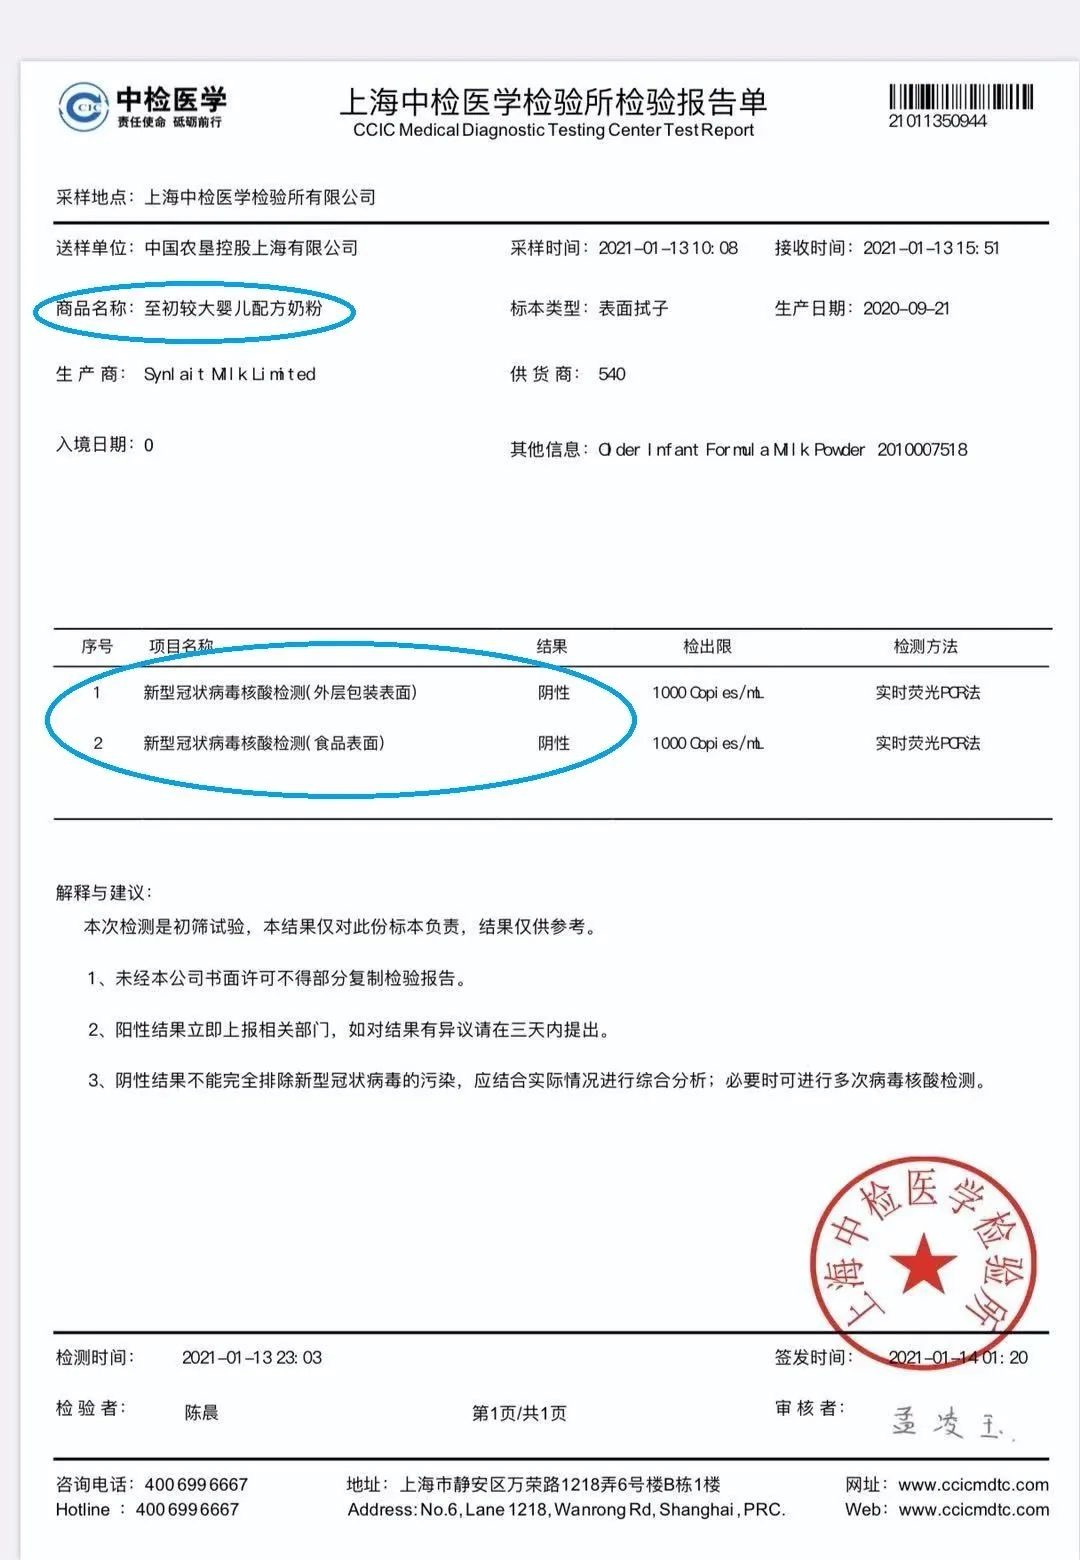 67中垦上海公司主动披露a2奶粉核酸检测全部阴性